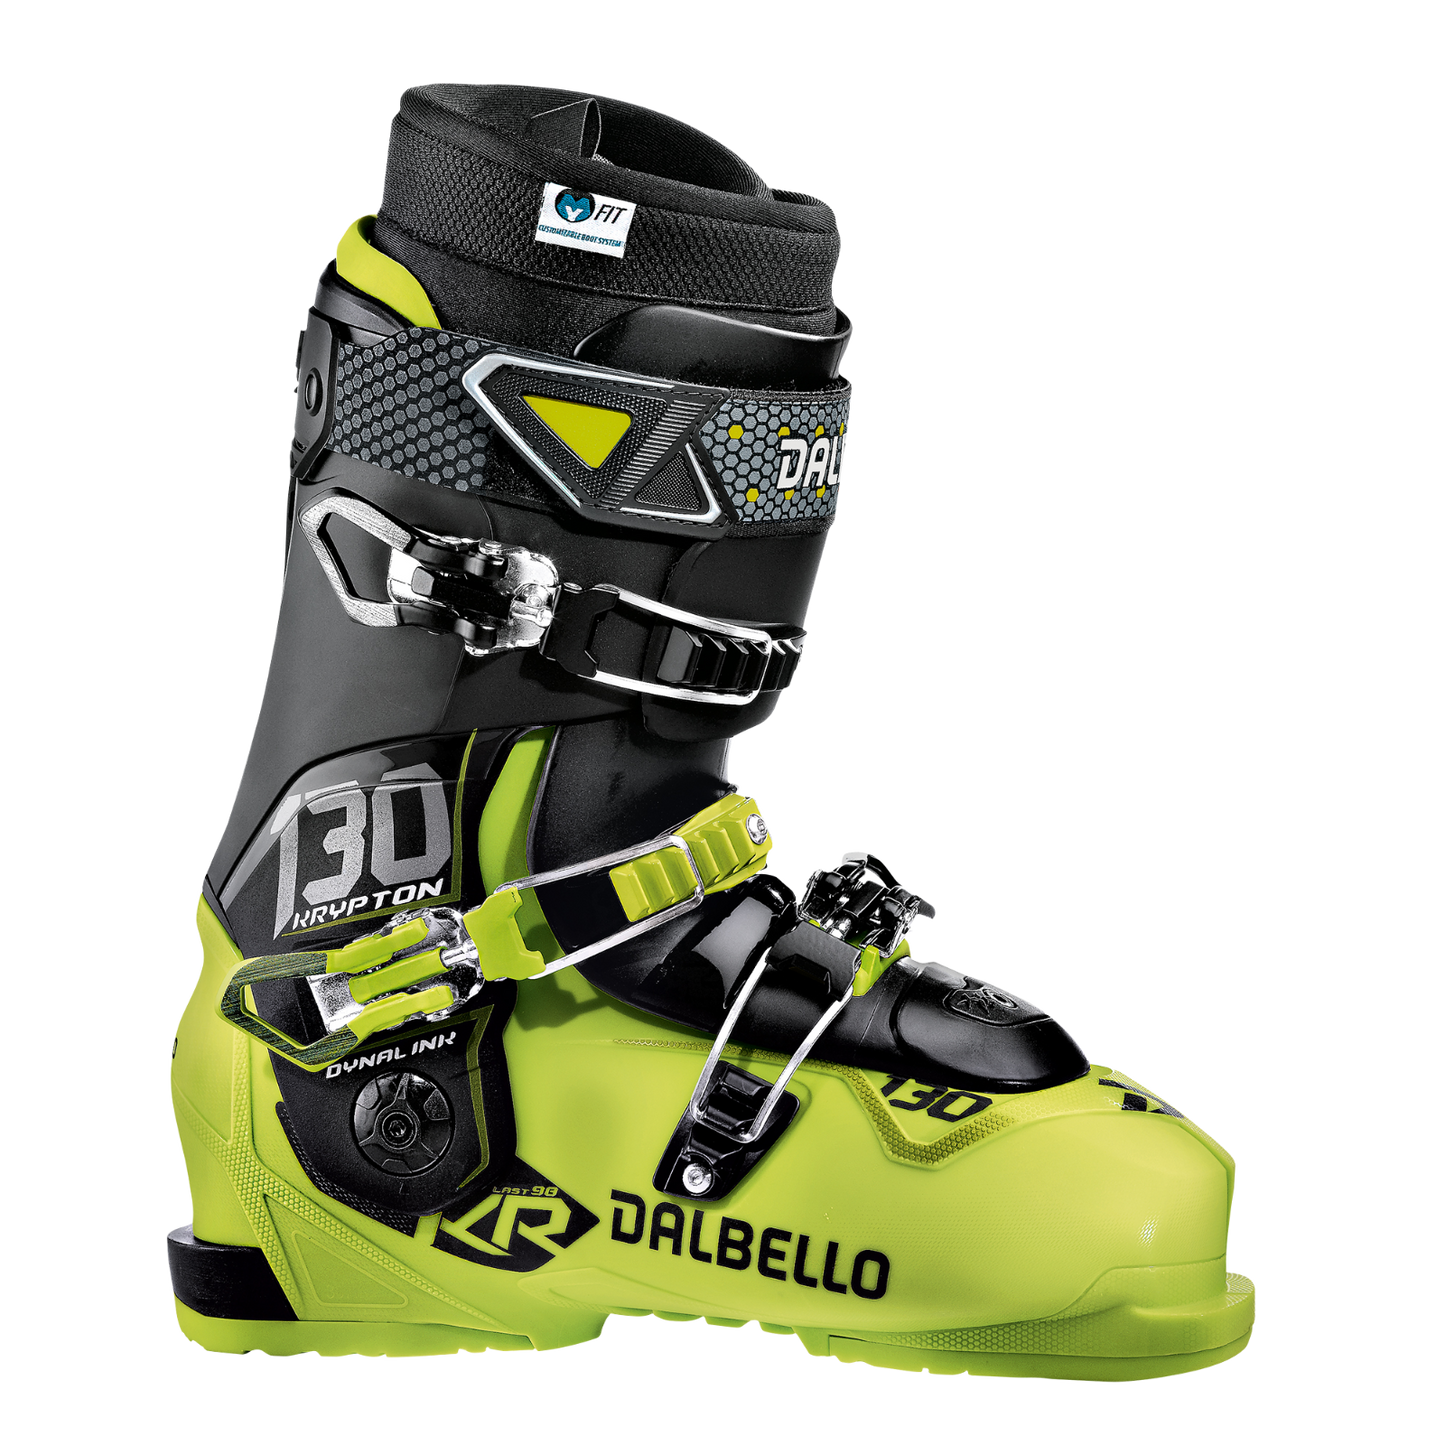 Scarponi da sci Dalbello Kripton 130 I.D. pianta 98mm freeride ski boots